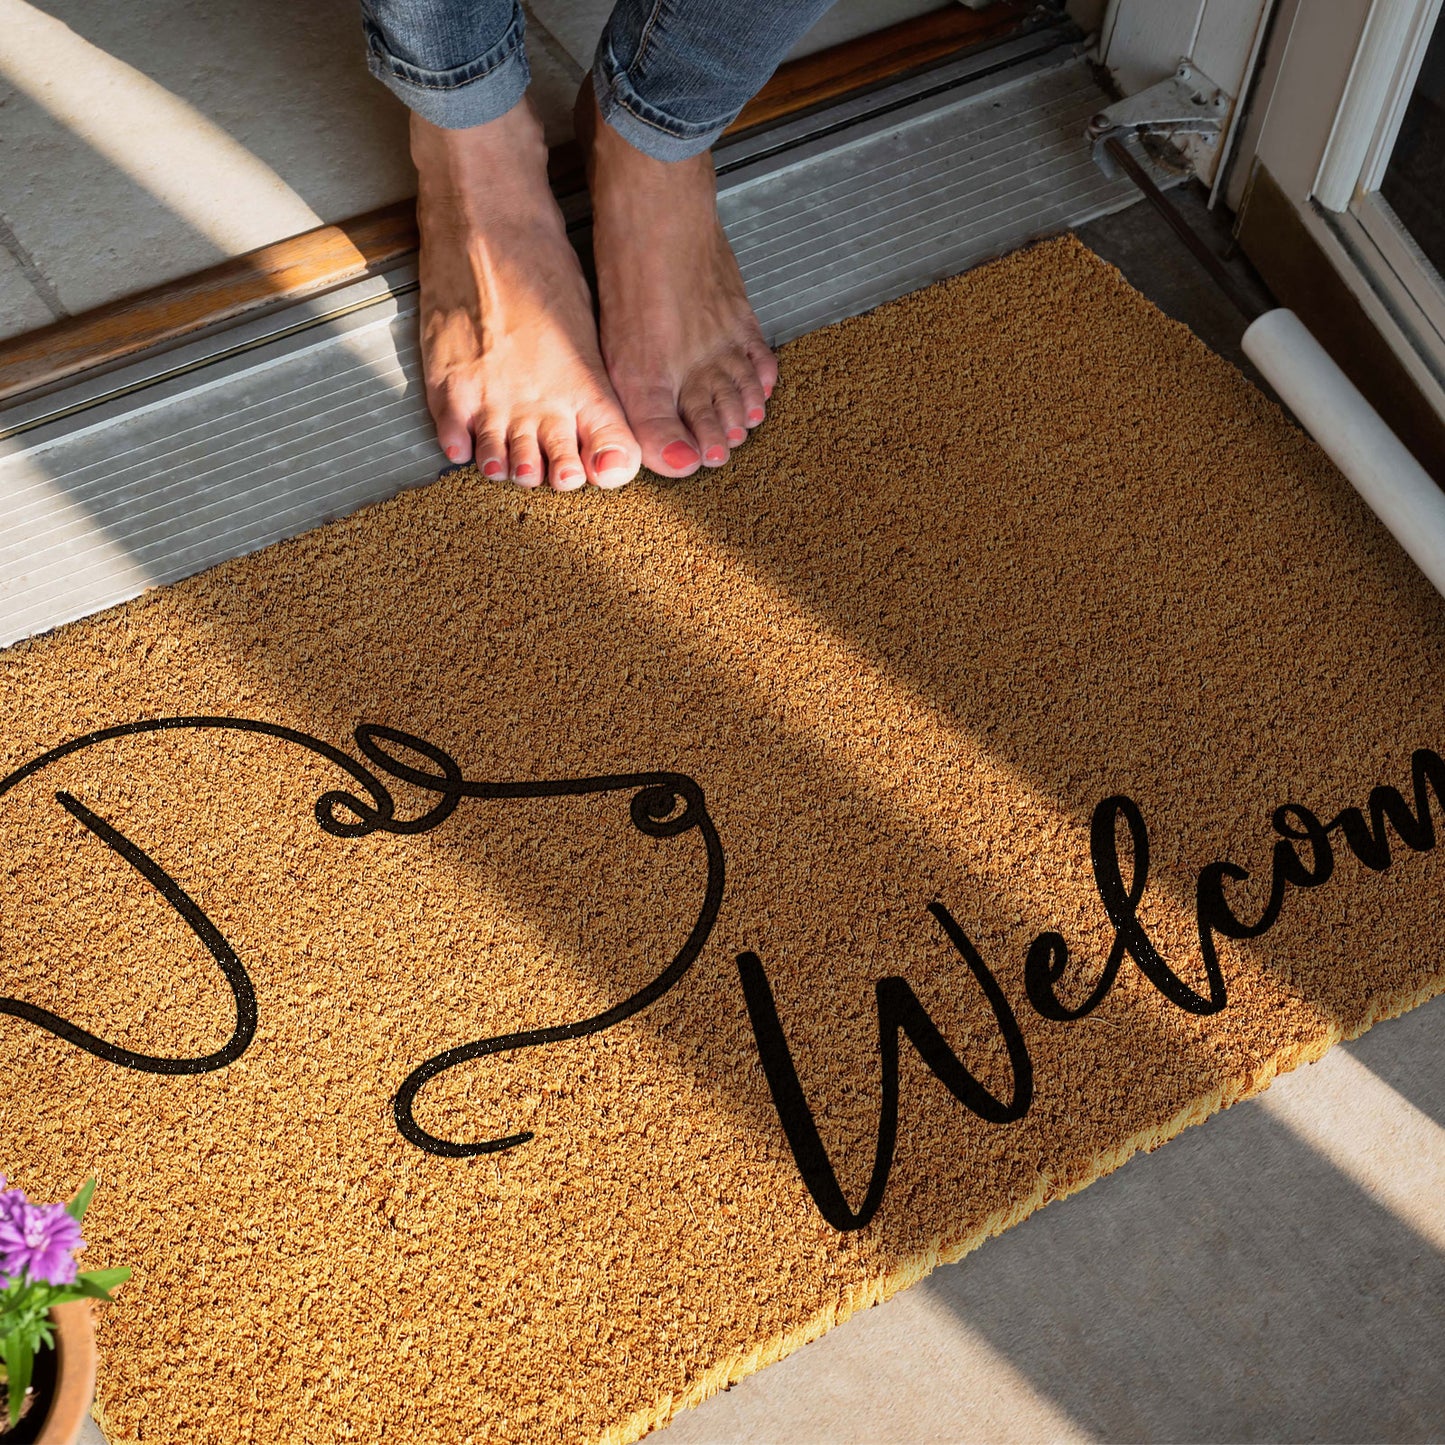 Coir Doormat - Curly Dog Welcome